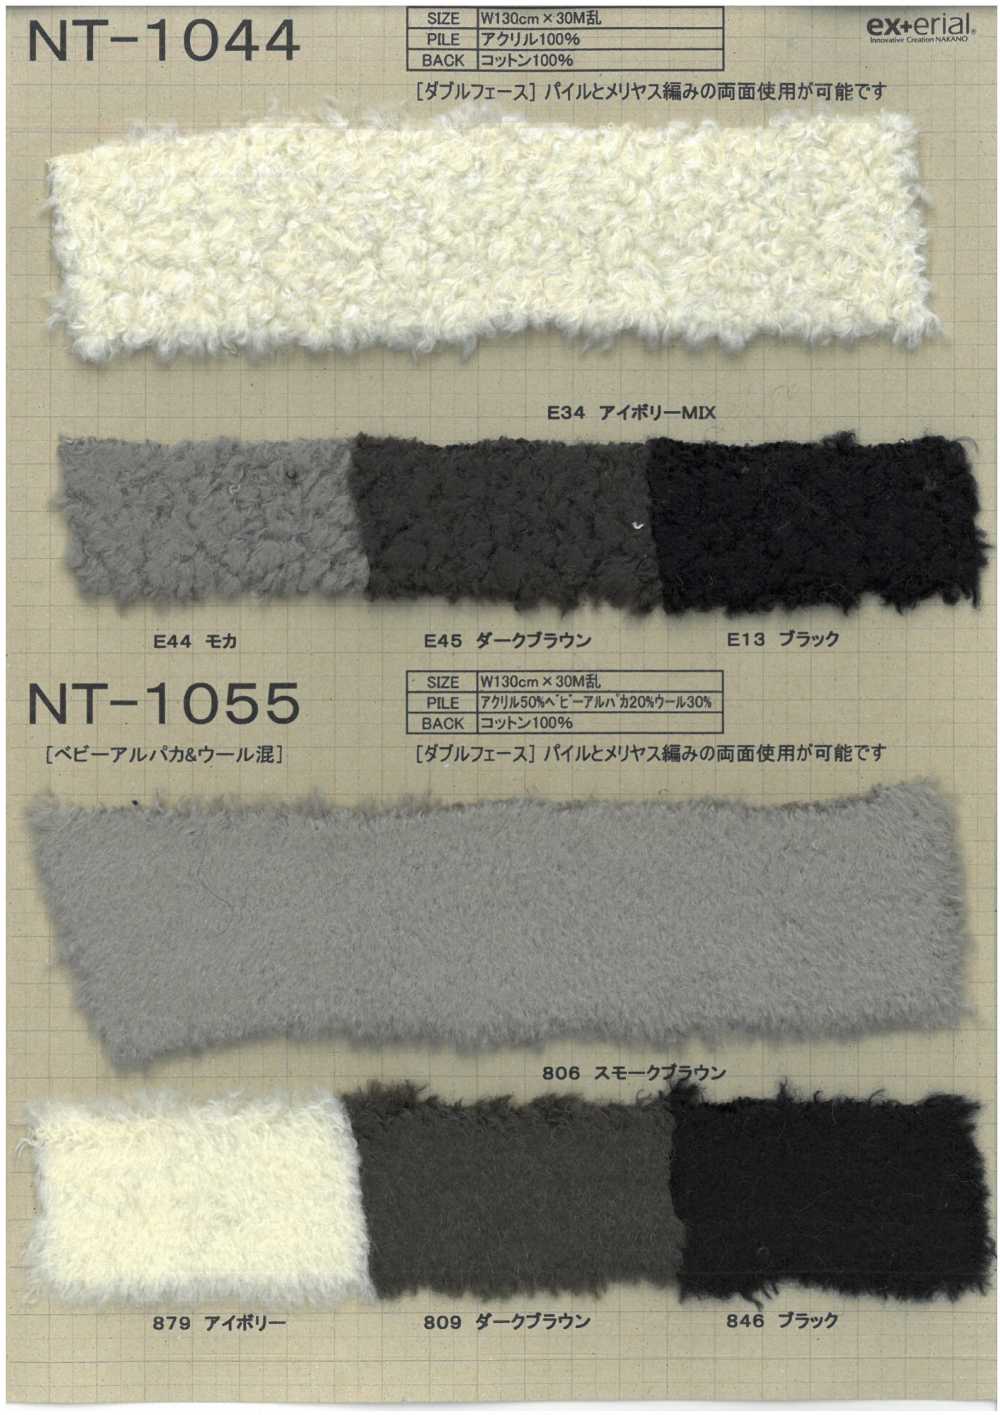 NT-1055 Craft Fur [mezcla De Alpaca De Doble Cara][Fabrica Textil] Industria De La Media Nakano